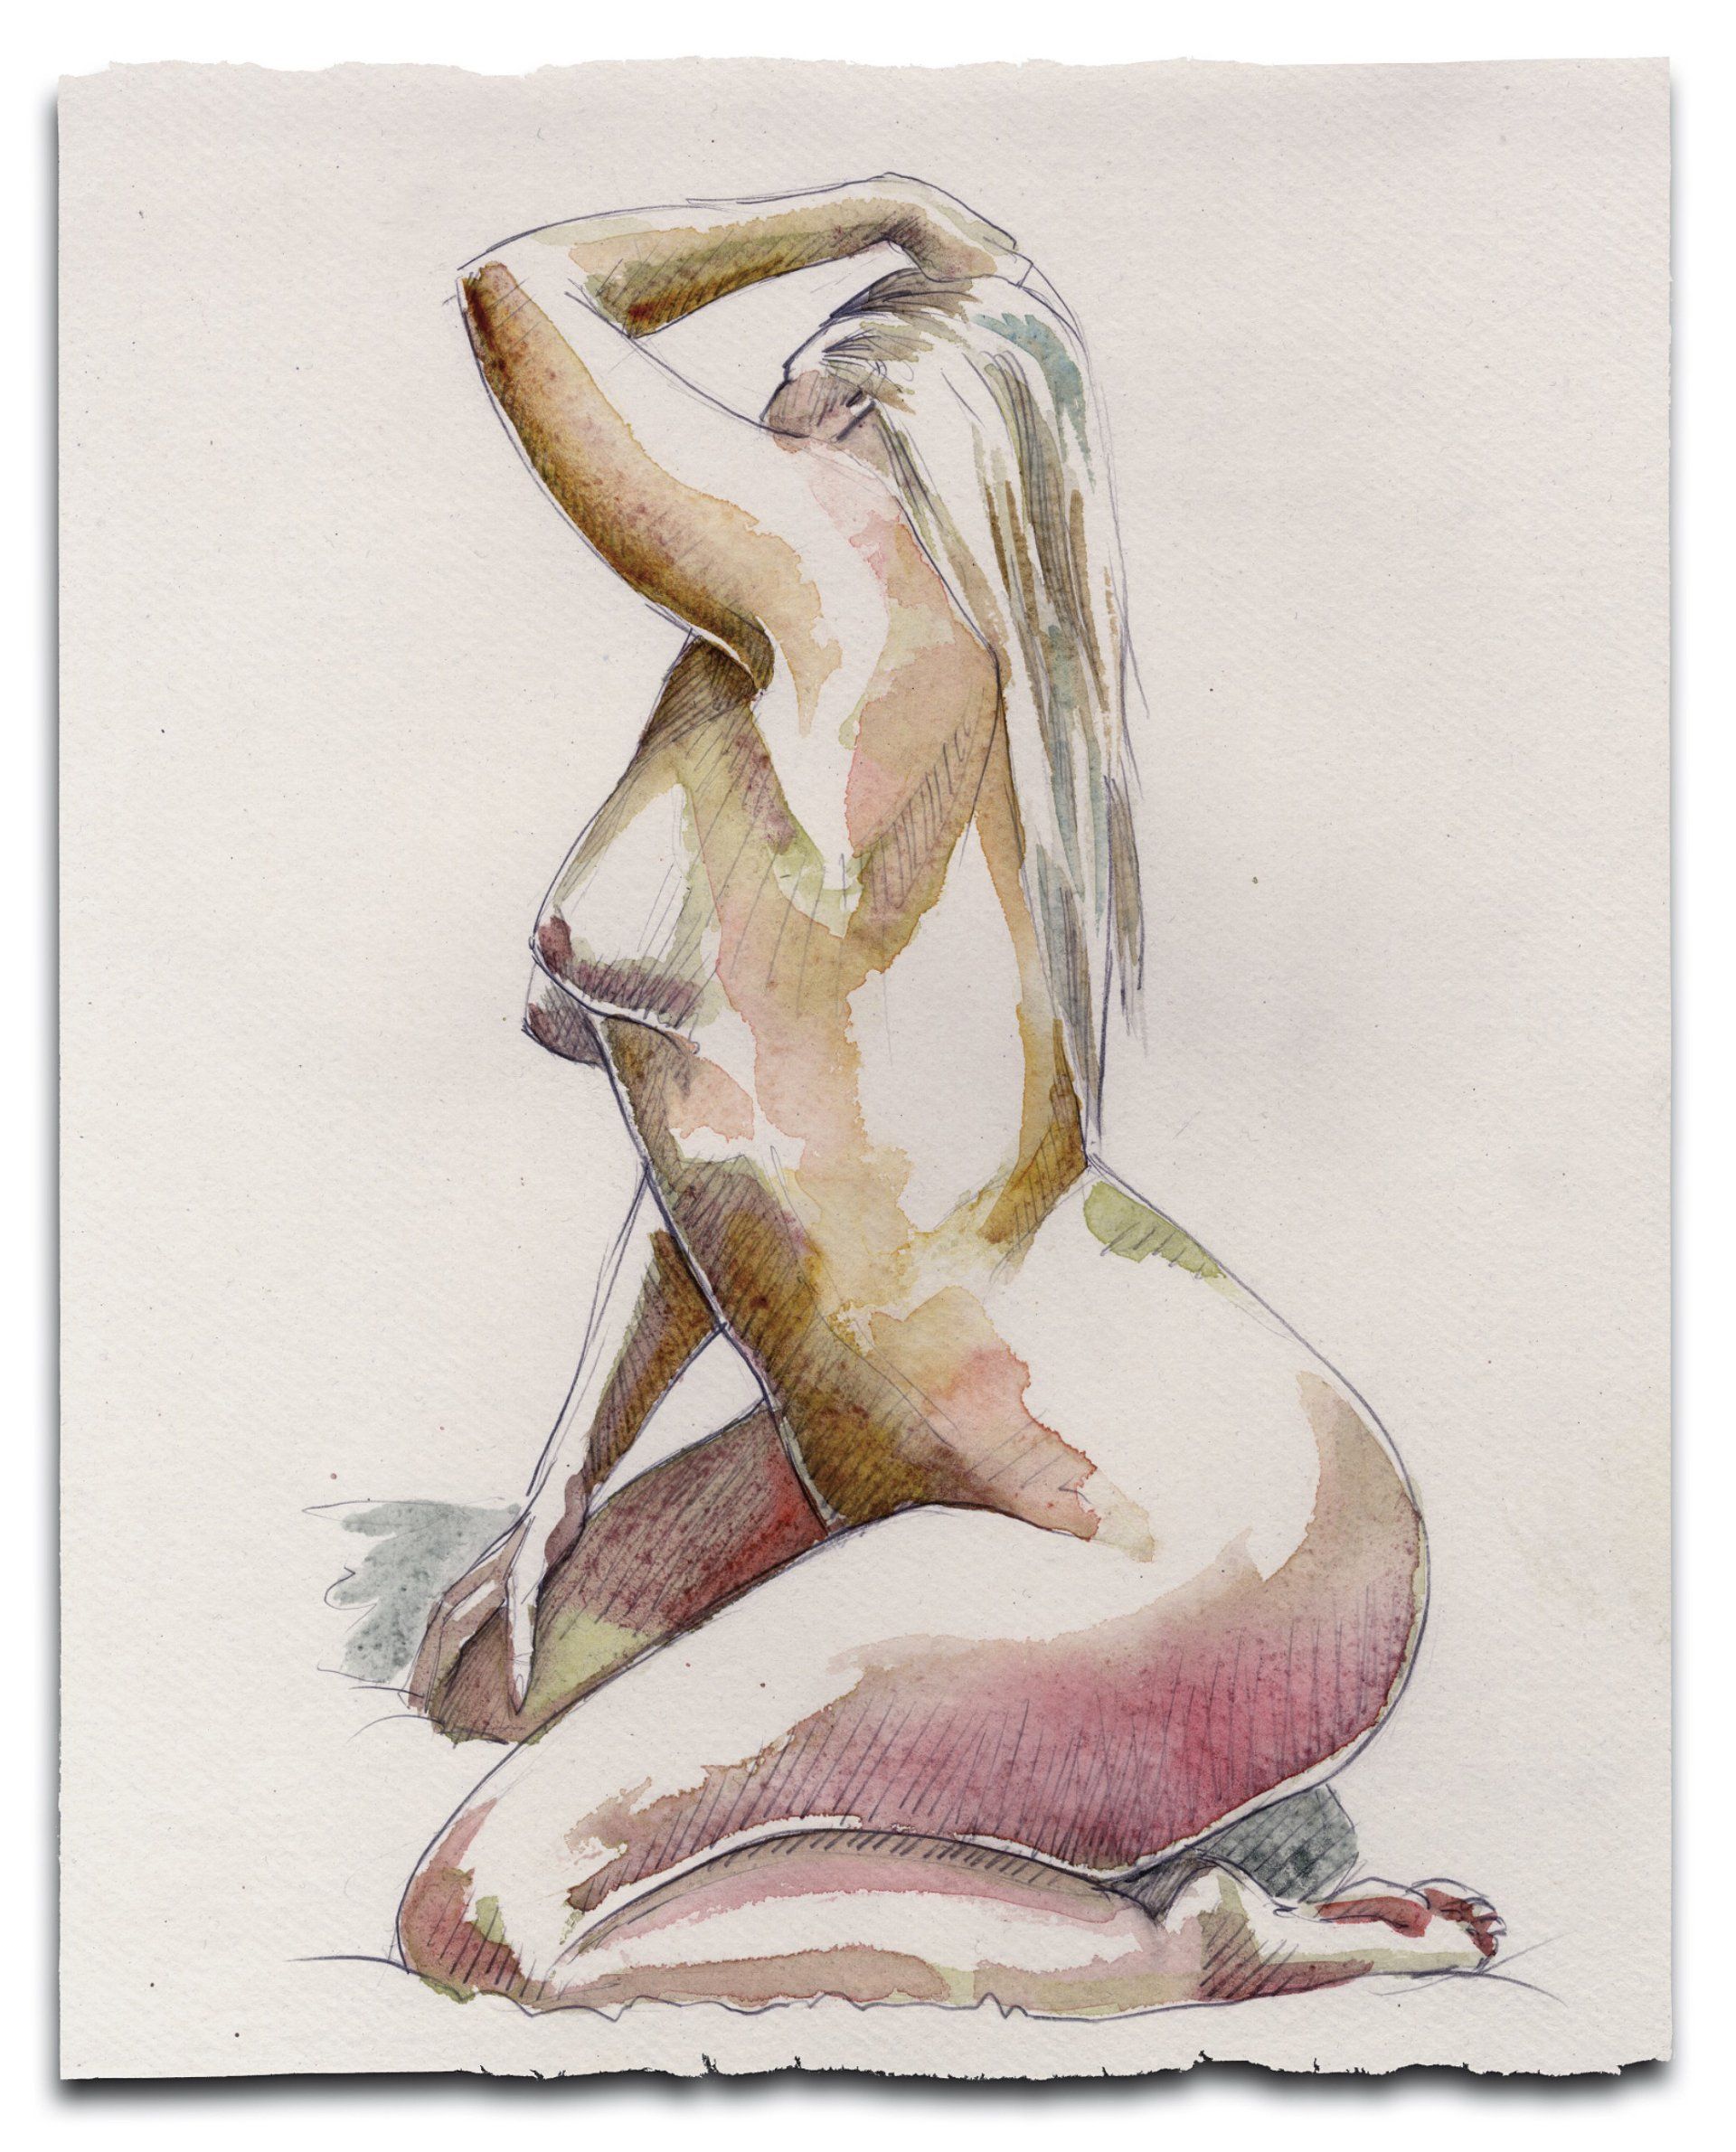 Commission a nude portrait